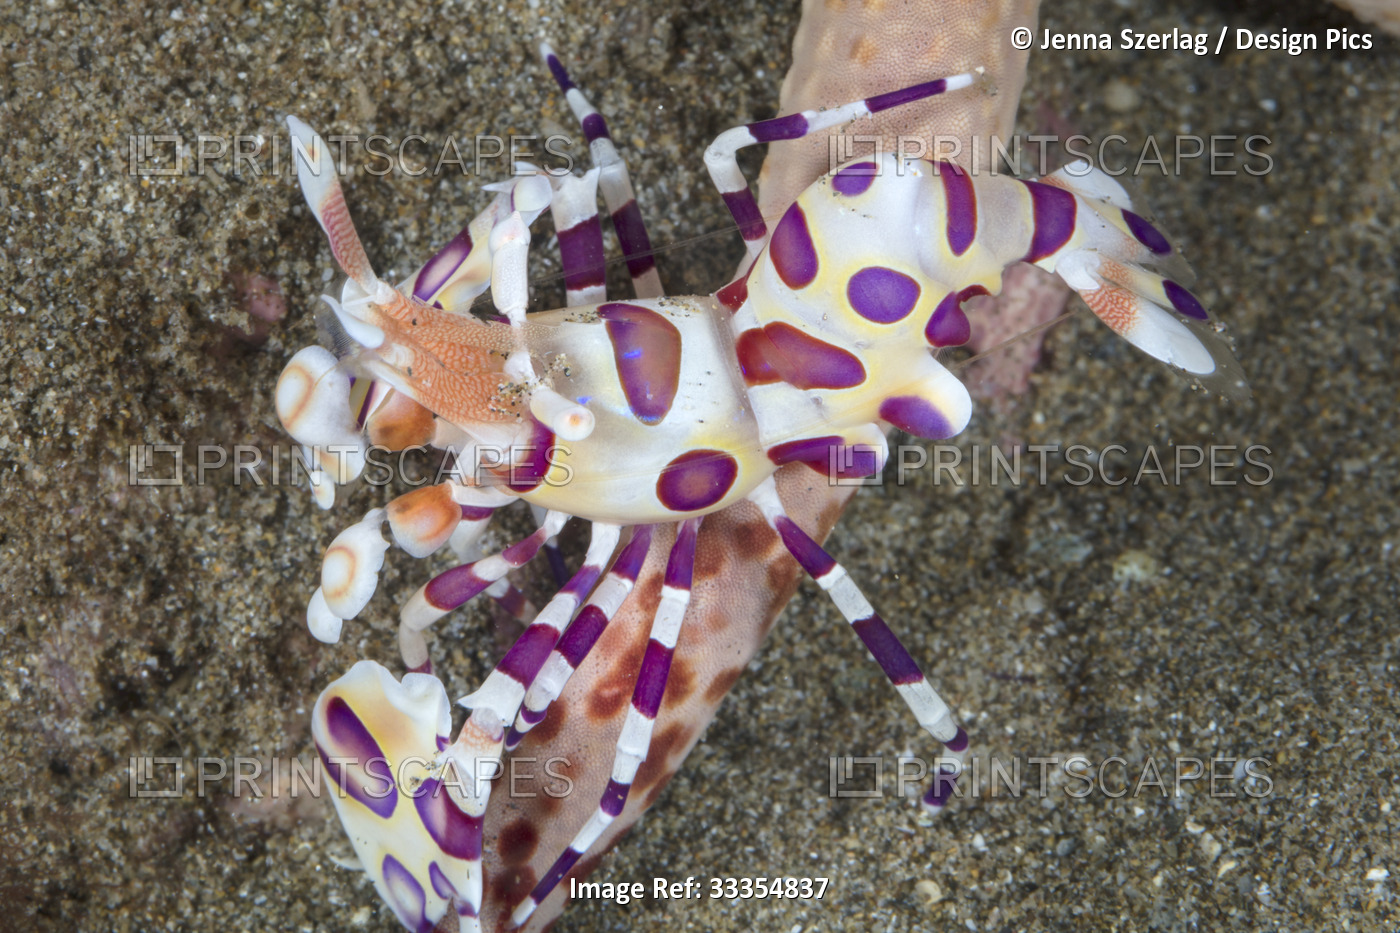 Harlequin Shrimp (Hymenocera picta) feeding on the ray of a starfish ...